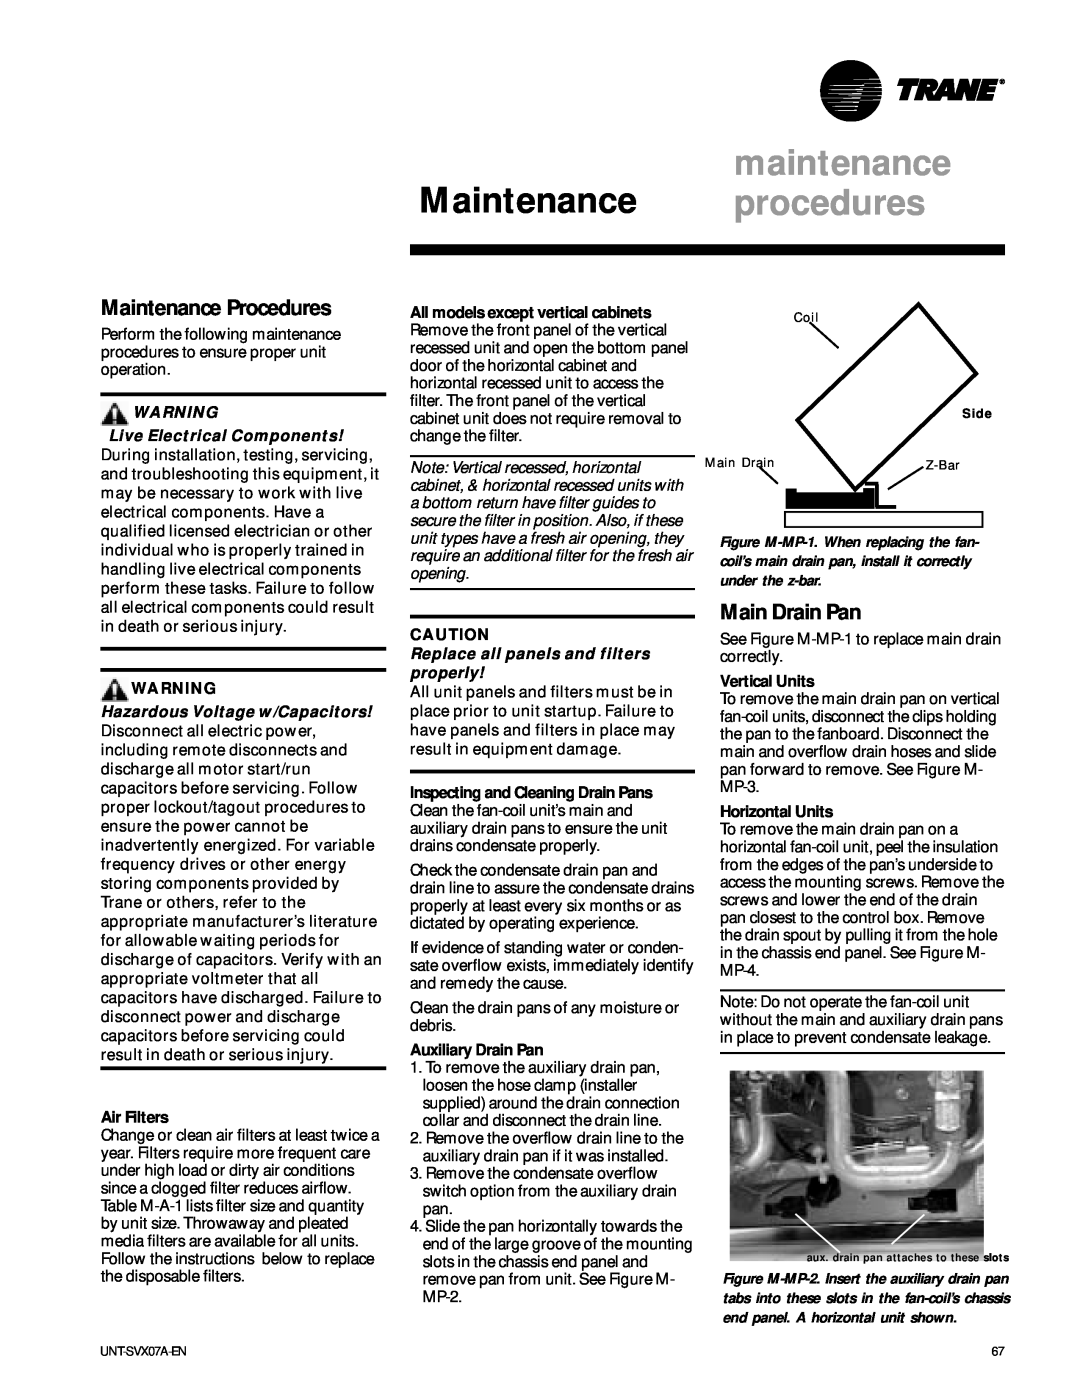 Trane UniTrane Fan-Coil & Force Flo Air Conditioners manual maintenance, Maintenance procedures, Maintenance Procedures 